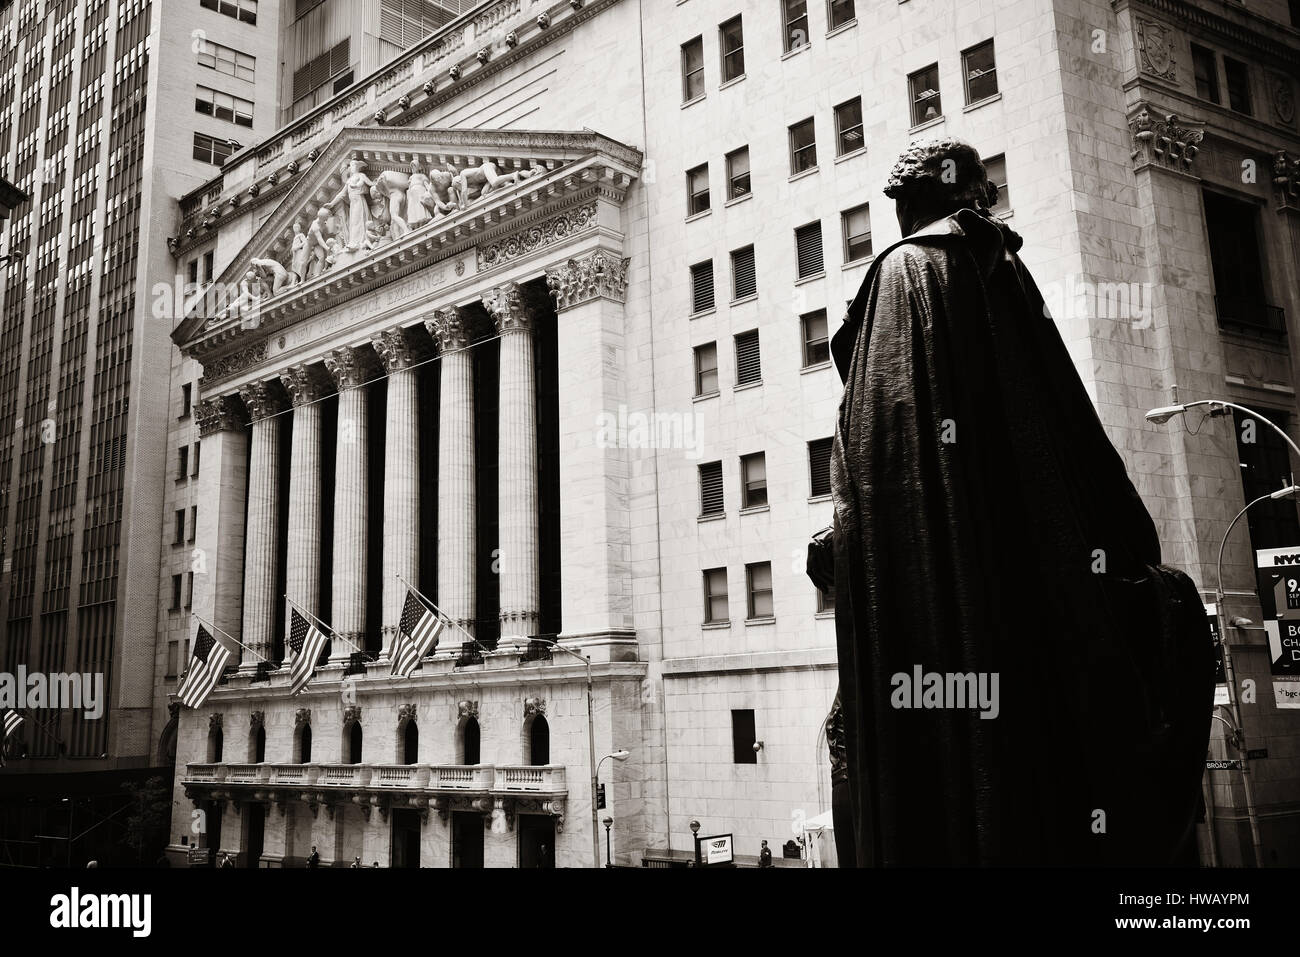 NEW YORK CITY - SEP-5: Wall Street mit Wolkenkratzern auf 5. September 2014 in Manhattan, New York City. Wall Street Finanzviertel, mit großen excha Stockfoto